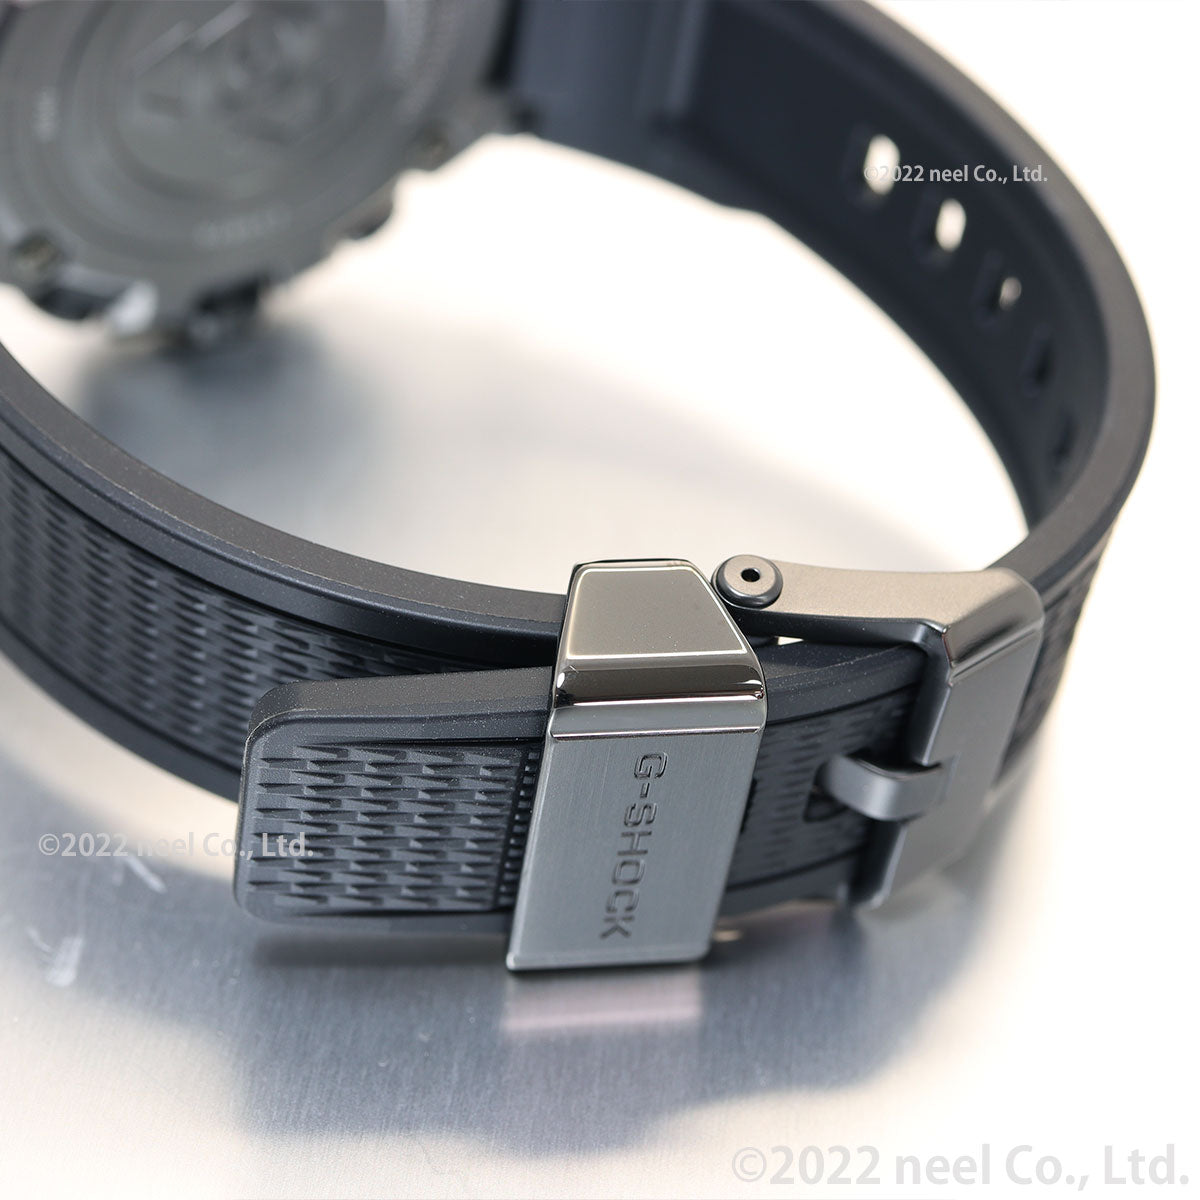 G-SHOCK Gショック MT-G MTG-B3000B-1AJF メンズ 腕時計 電波ソーラー Bluetooth アナログ ブラック 国内正規品 カシオ